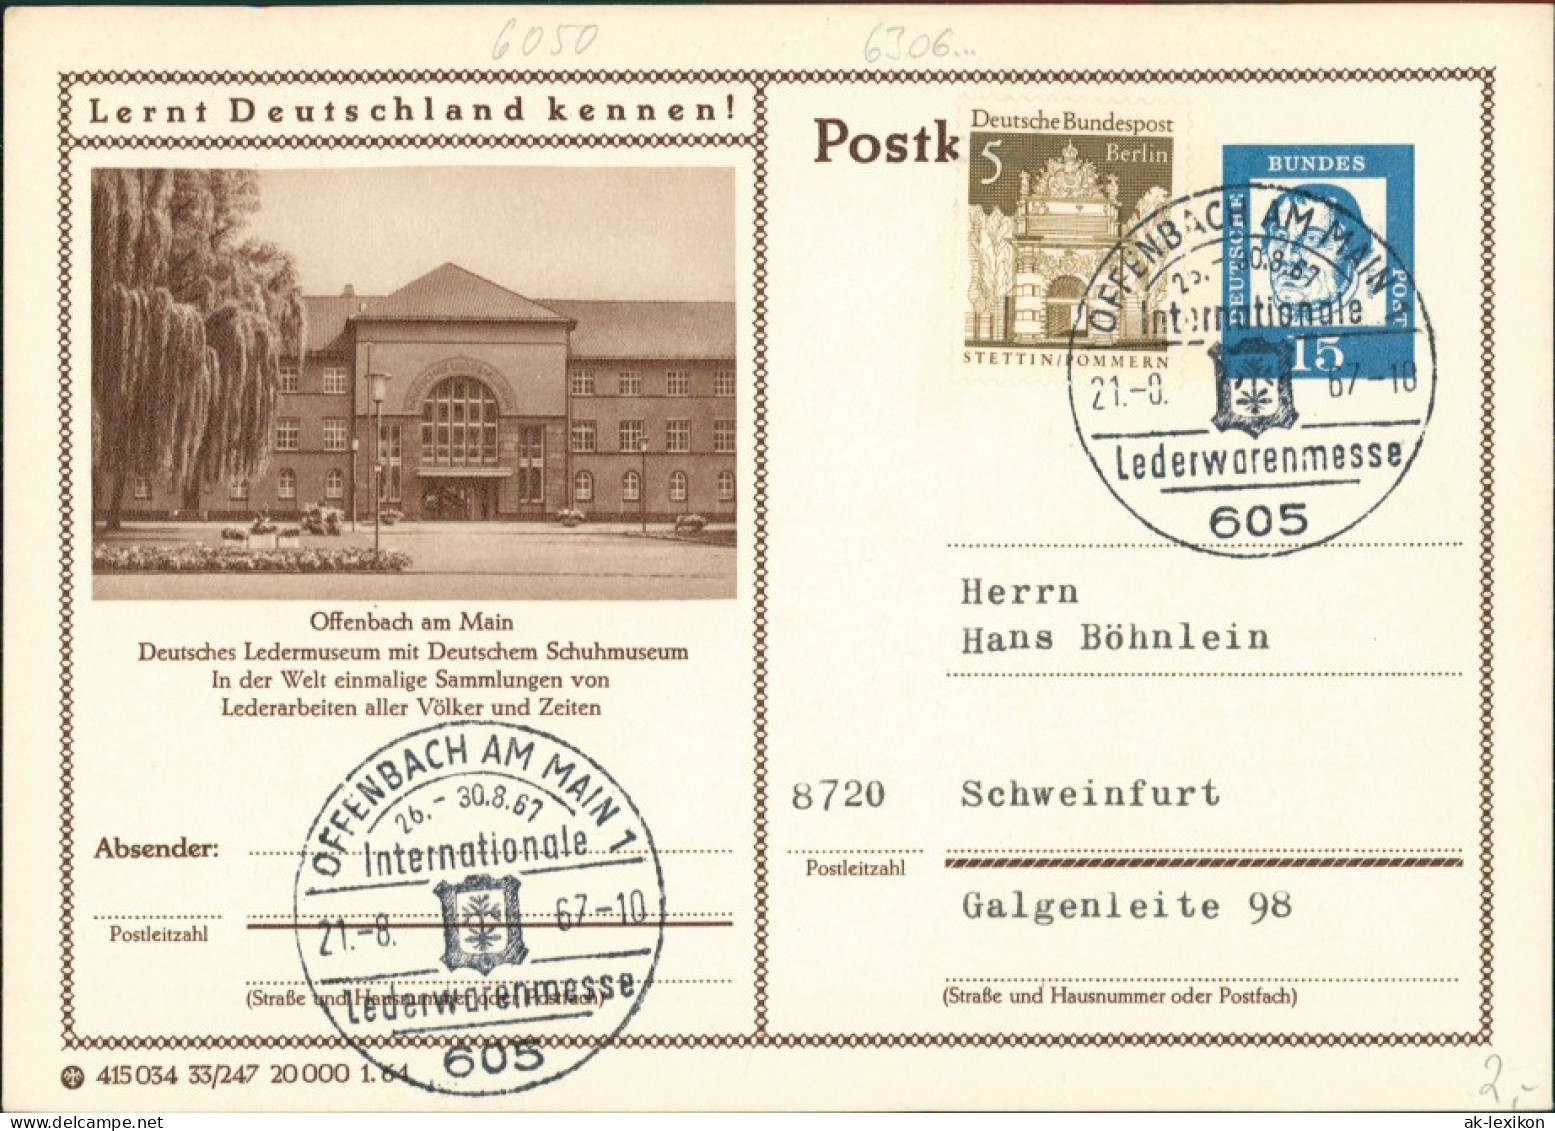 Offenbach (Main) Deutsches Schuhmuseum Sondersrempel Lederwarenmesse 1957 - Offenbach